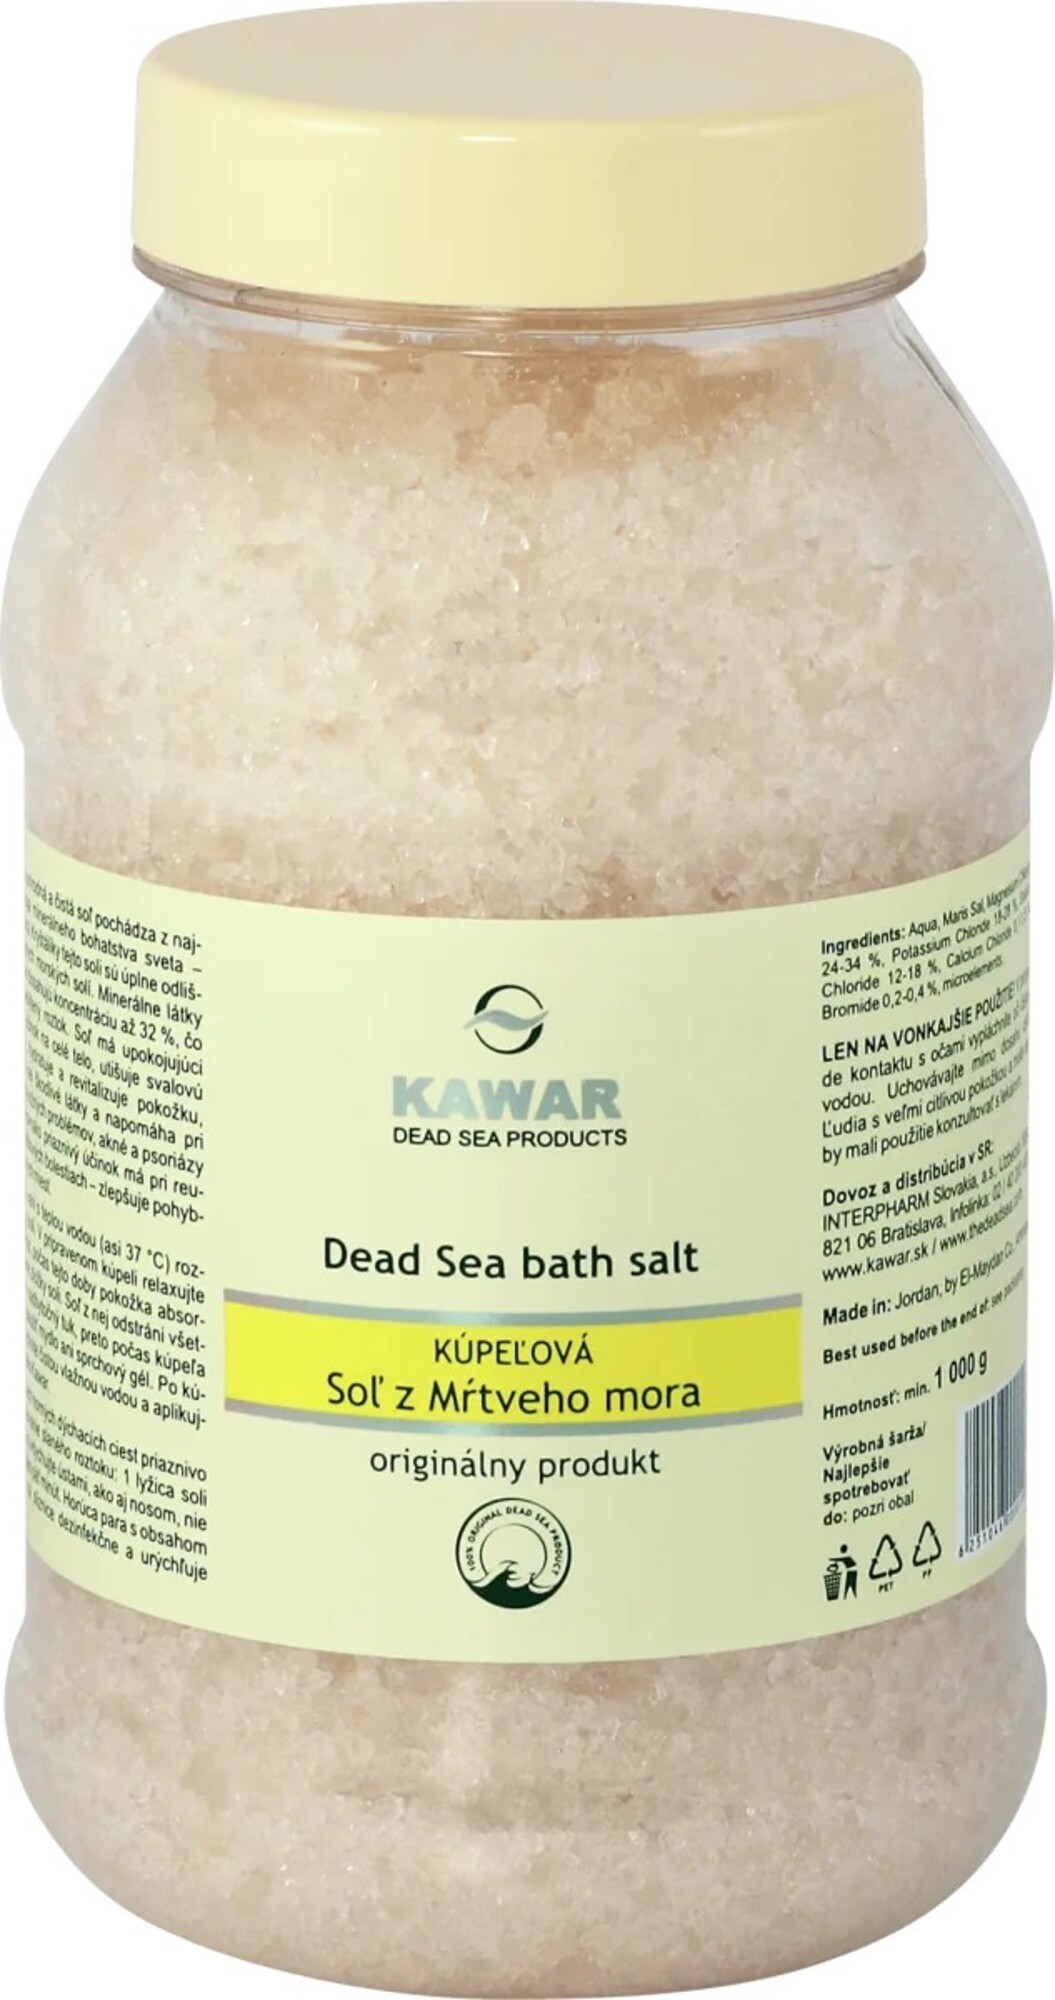 KAWAR kúpeľová soľ, 6,79 €/1 kg. Obsahuje soľ z Mŕtveho mora, upokojuje, tlmí svalovú únavu. Kúpiš online alebo v lekárni.